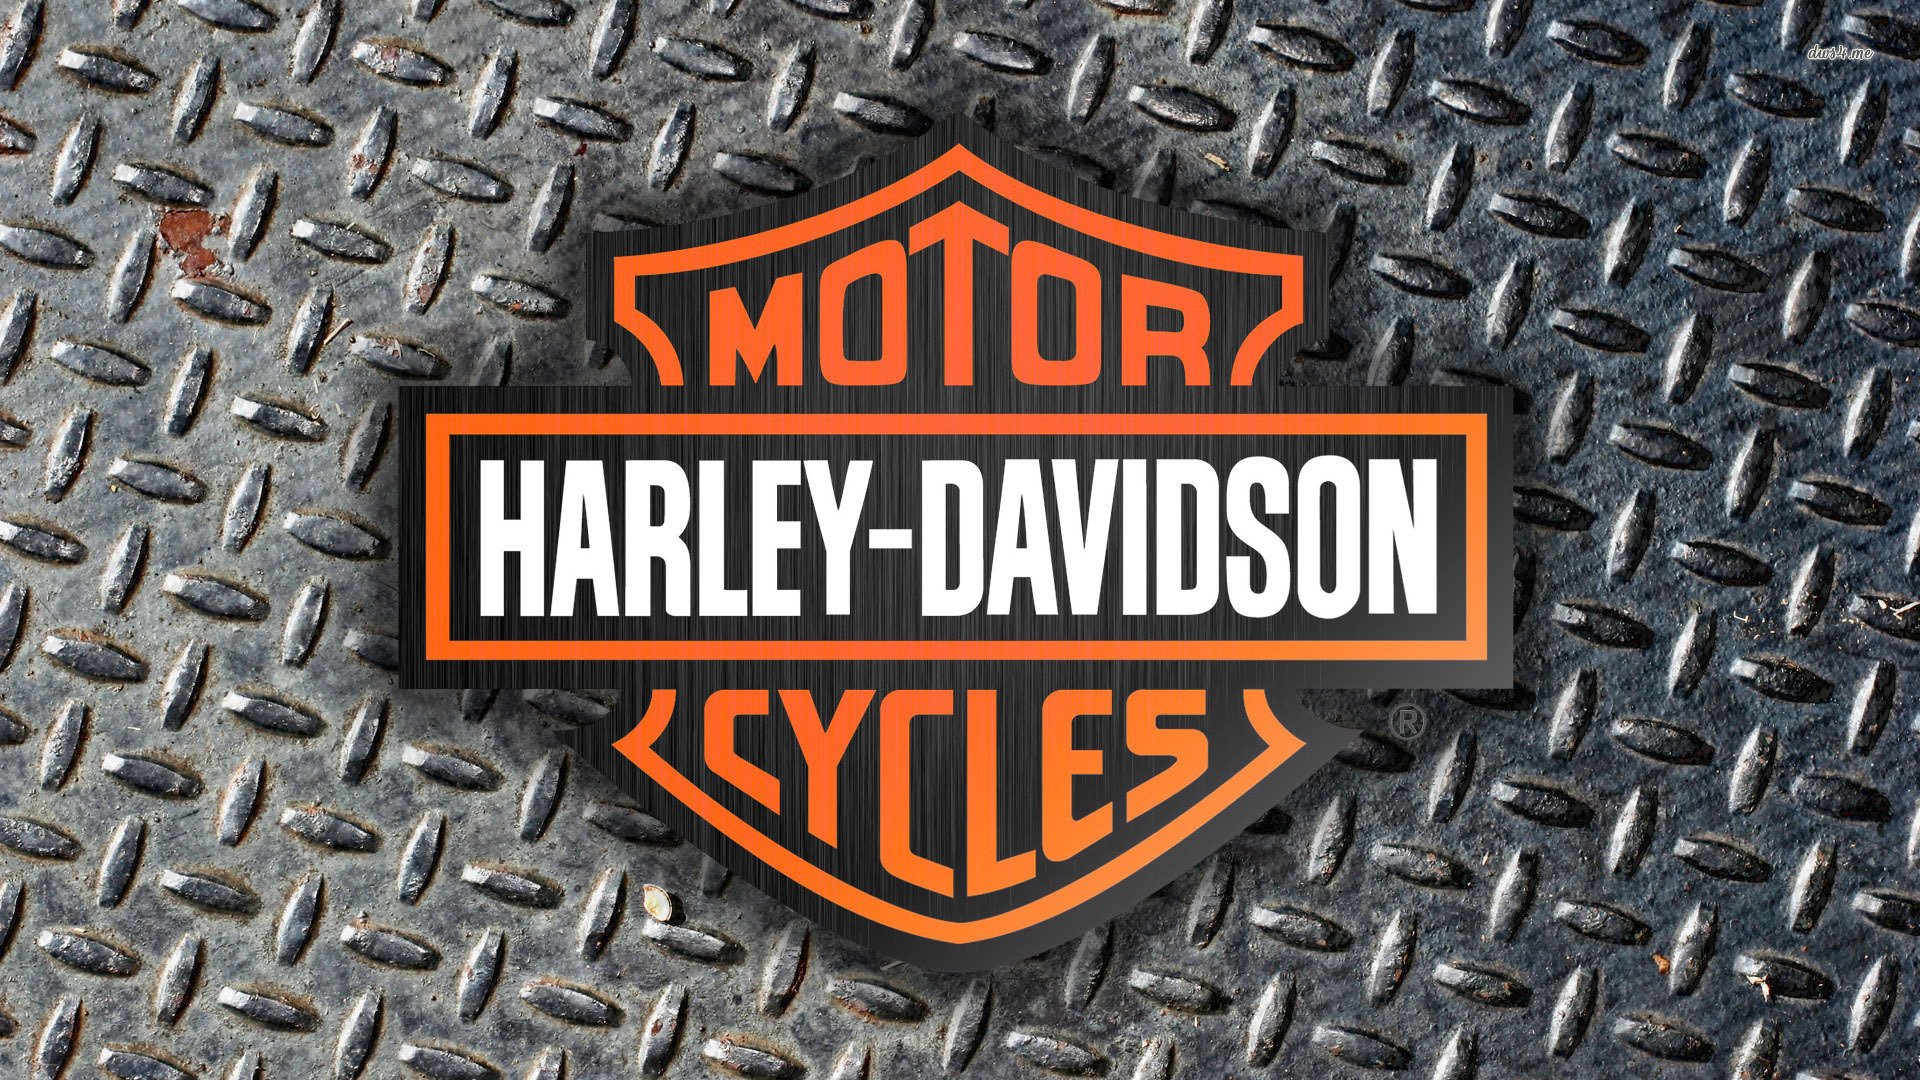 29034 harley davidson logo 1920x1080 motorcycle wallpaper Wallpaper